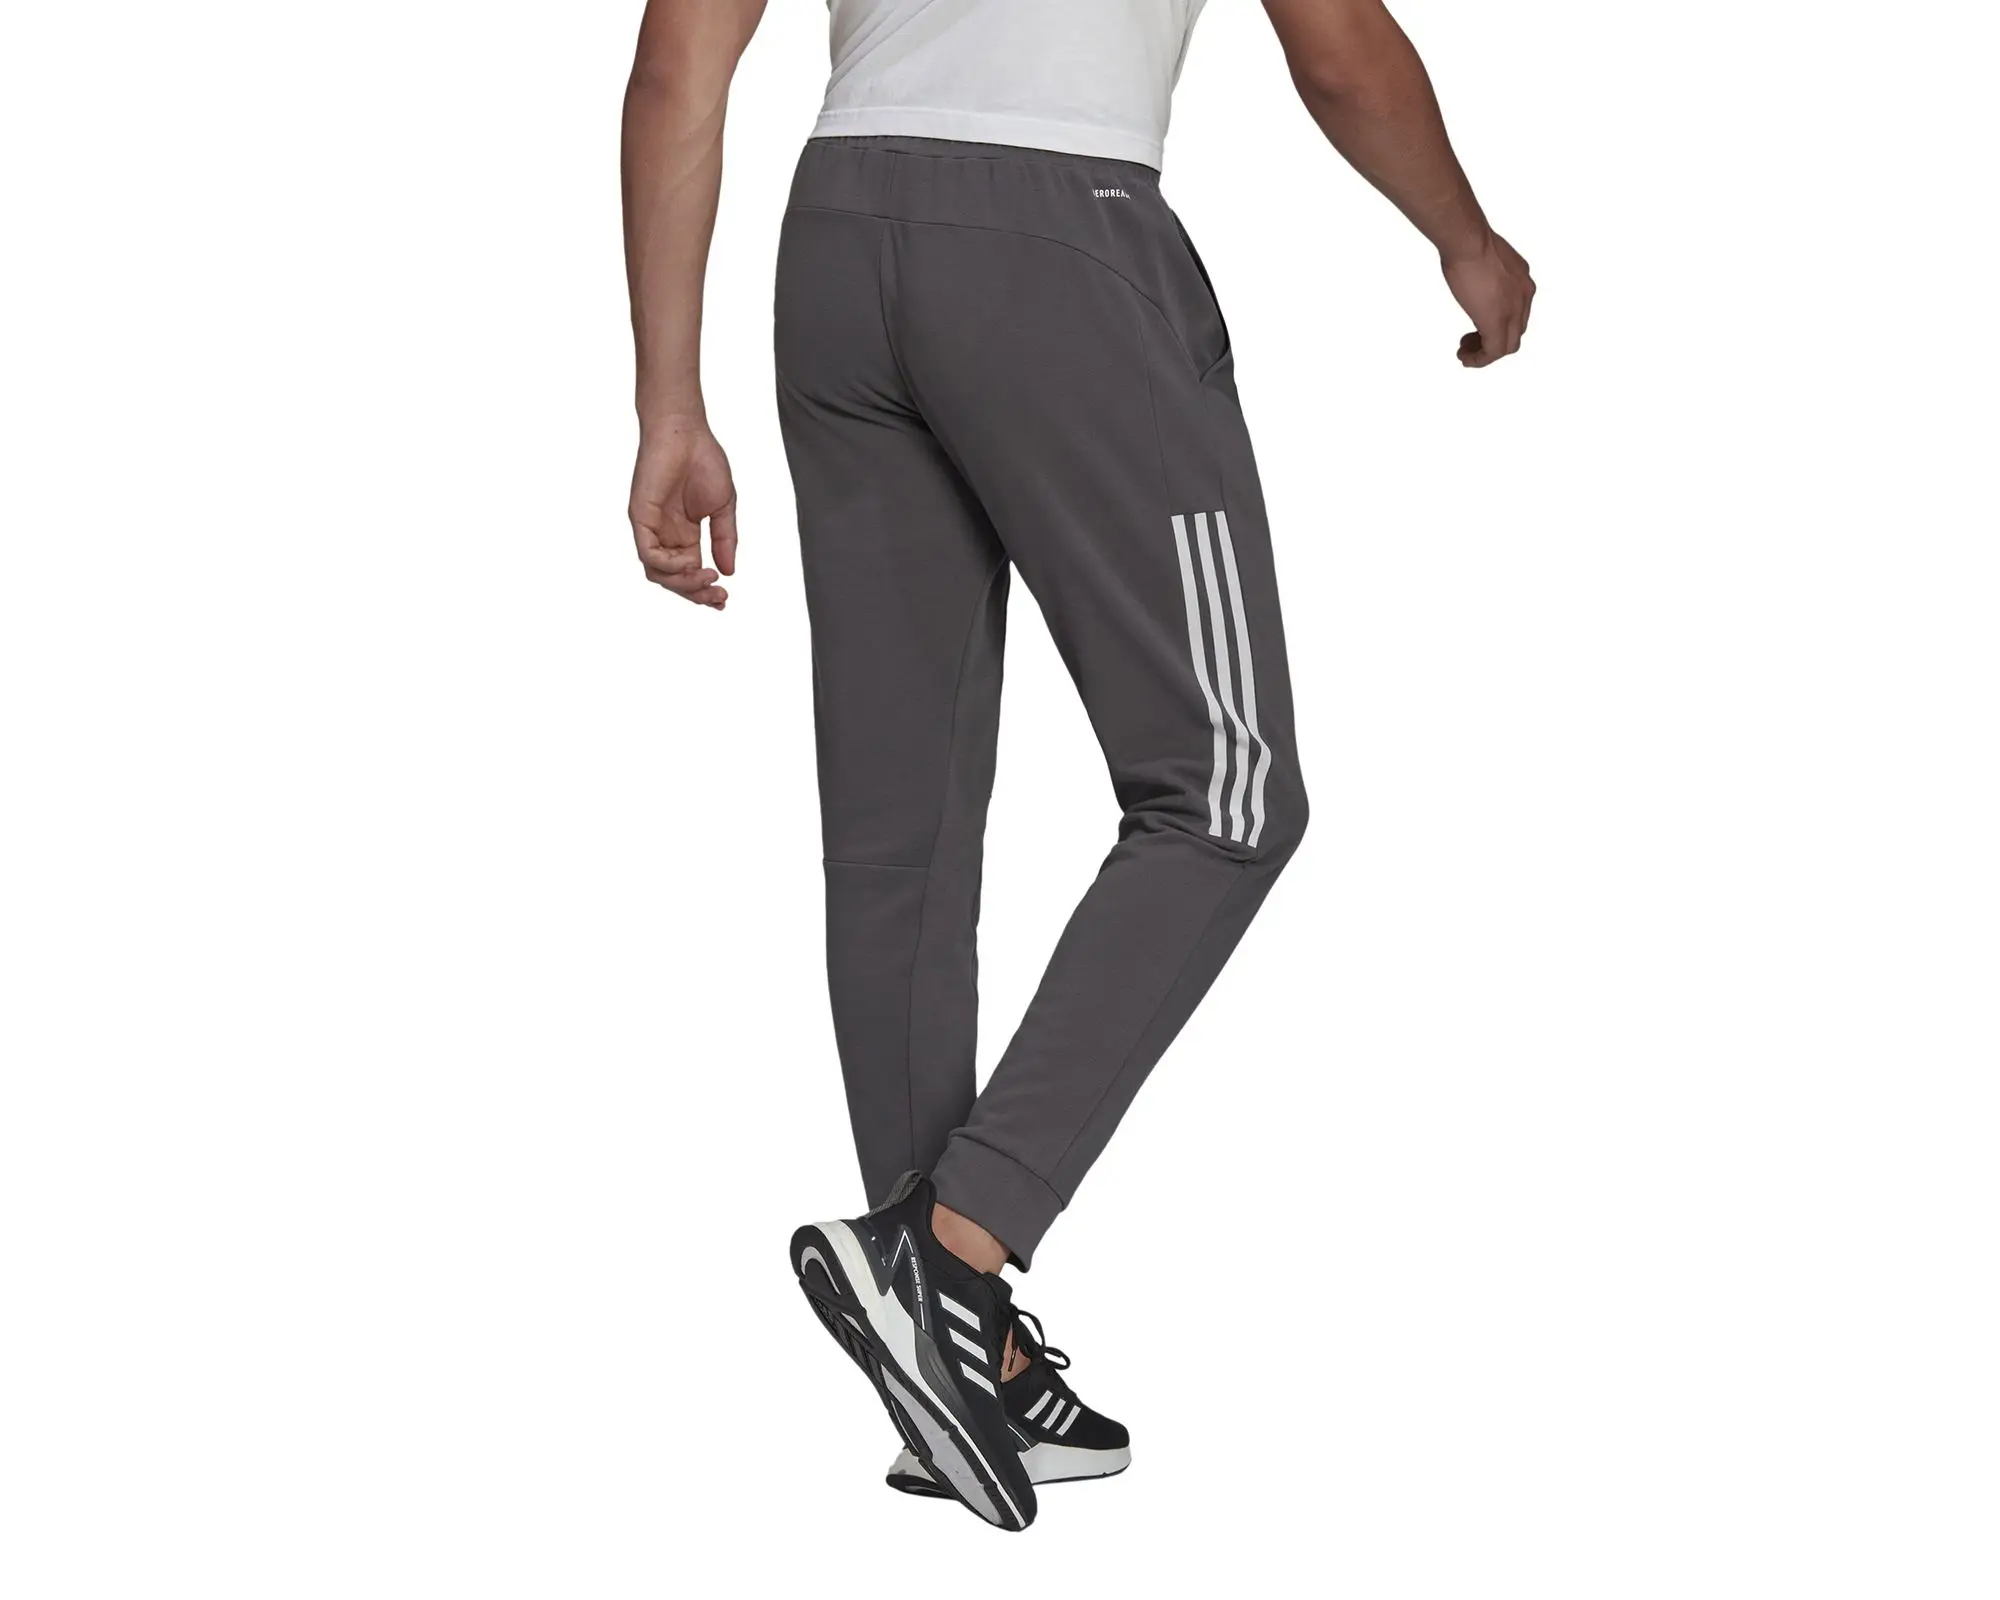 Оригинальные Серые Стильные мужские повседневные спортивные брюки Adidasудобные спортивные брюки для ходьбы и бега удобные повседневные спортивныебрюки